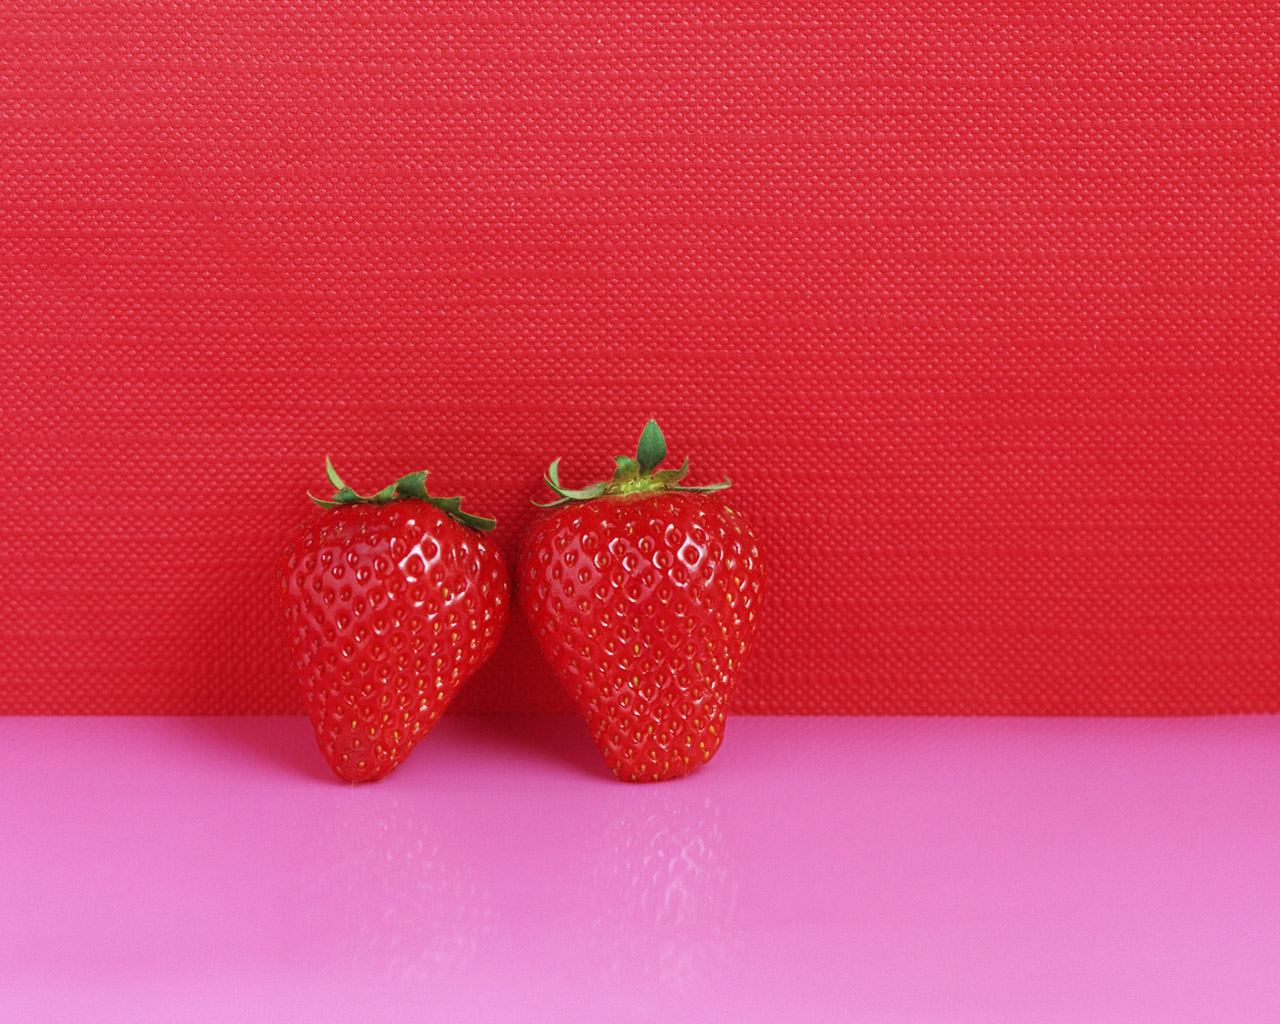 壁纸1280x1024鲜鲜草莓壁纸壁纸 鲜鲜草莓壁纸壁纸 鲜鲜草莓壁纸图片 鲜鲜草莓壁纸素材 植物壁纸 植物图库 植物图片素材桌面壁纸